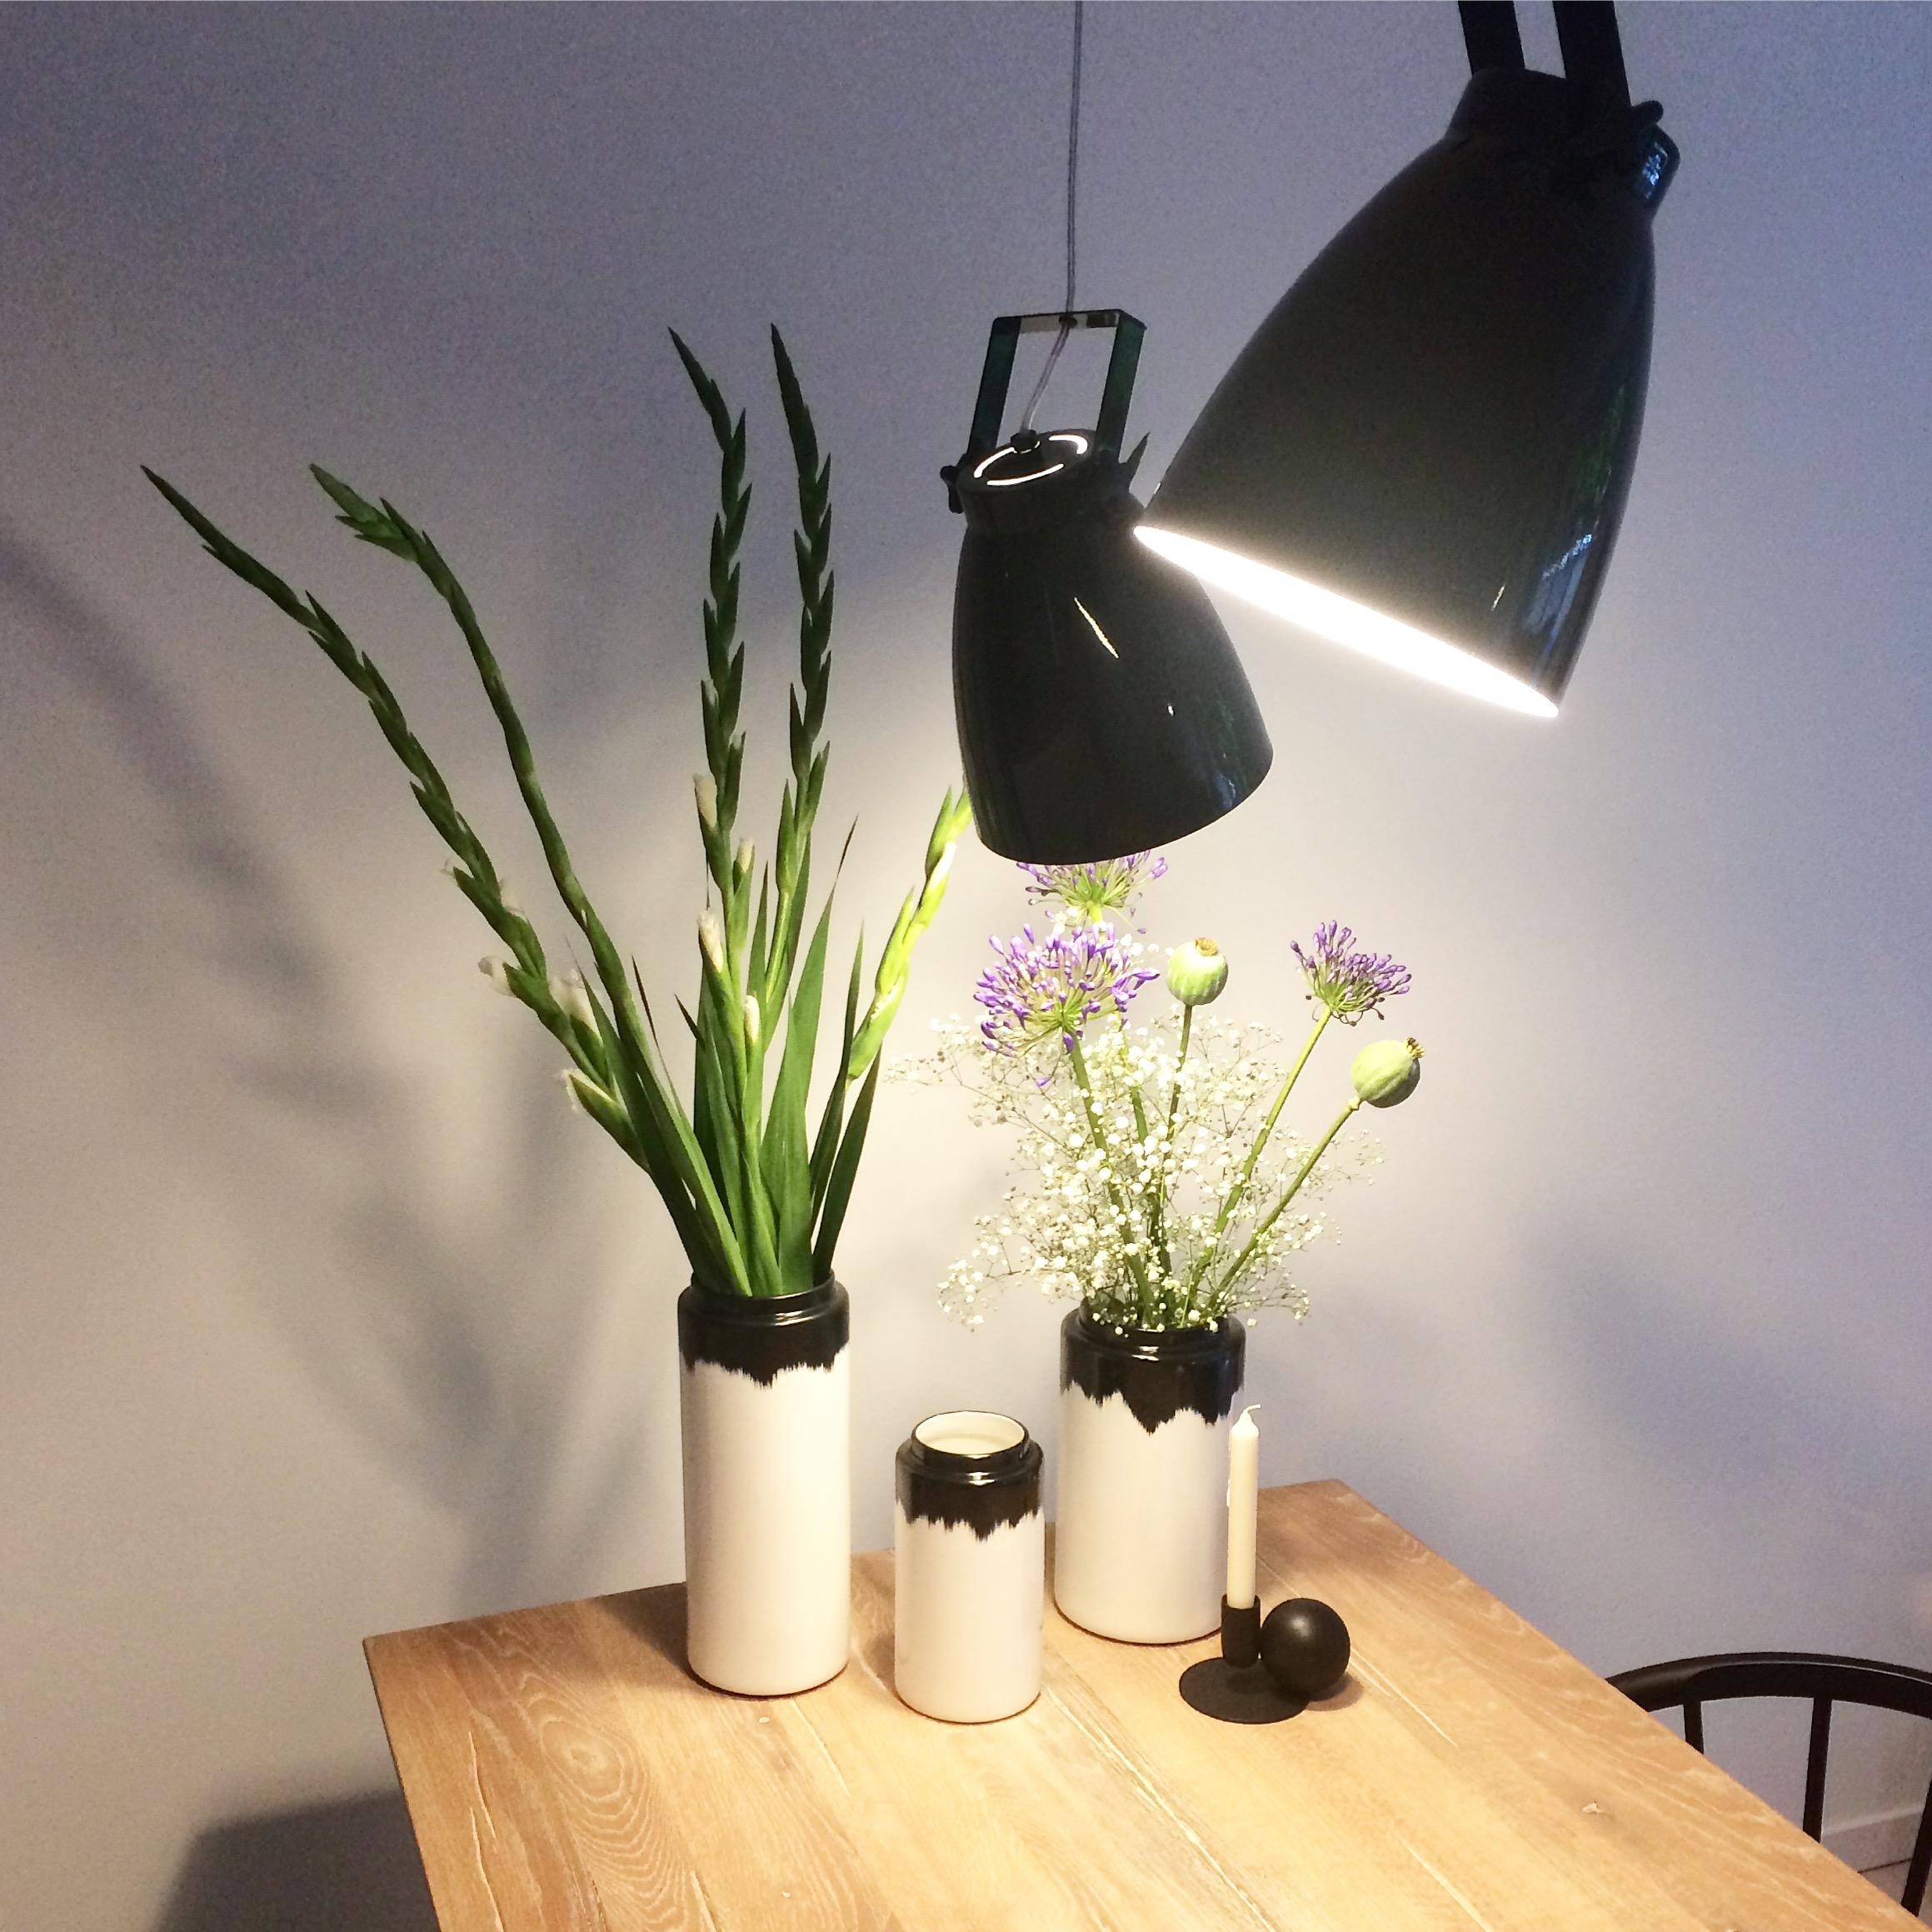 #flowers #interior #light #kitchen #esstisch #esstischliebe #minimalism 